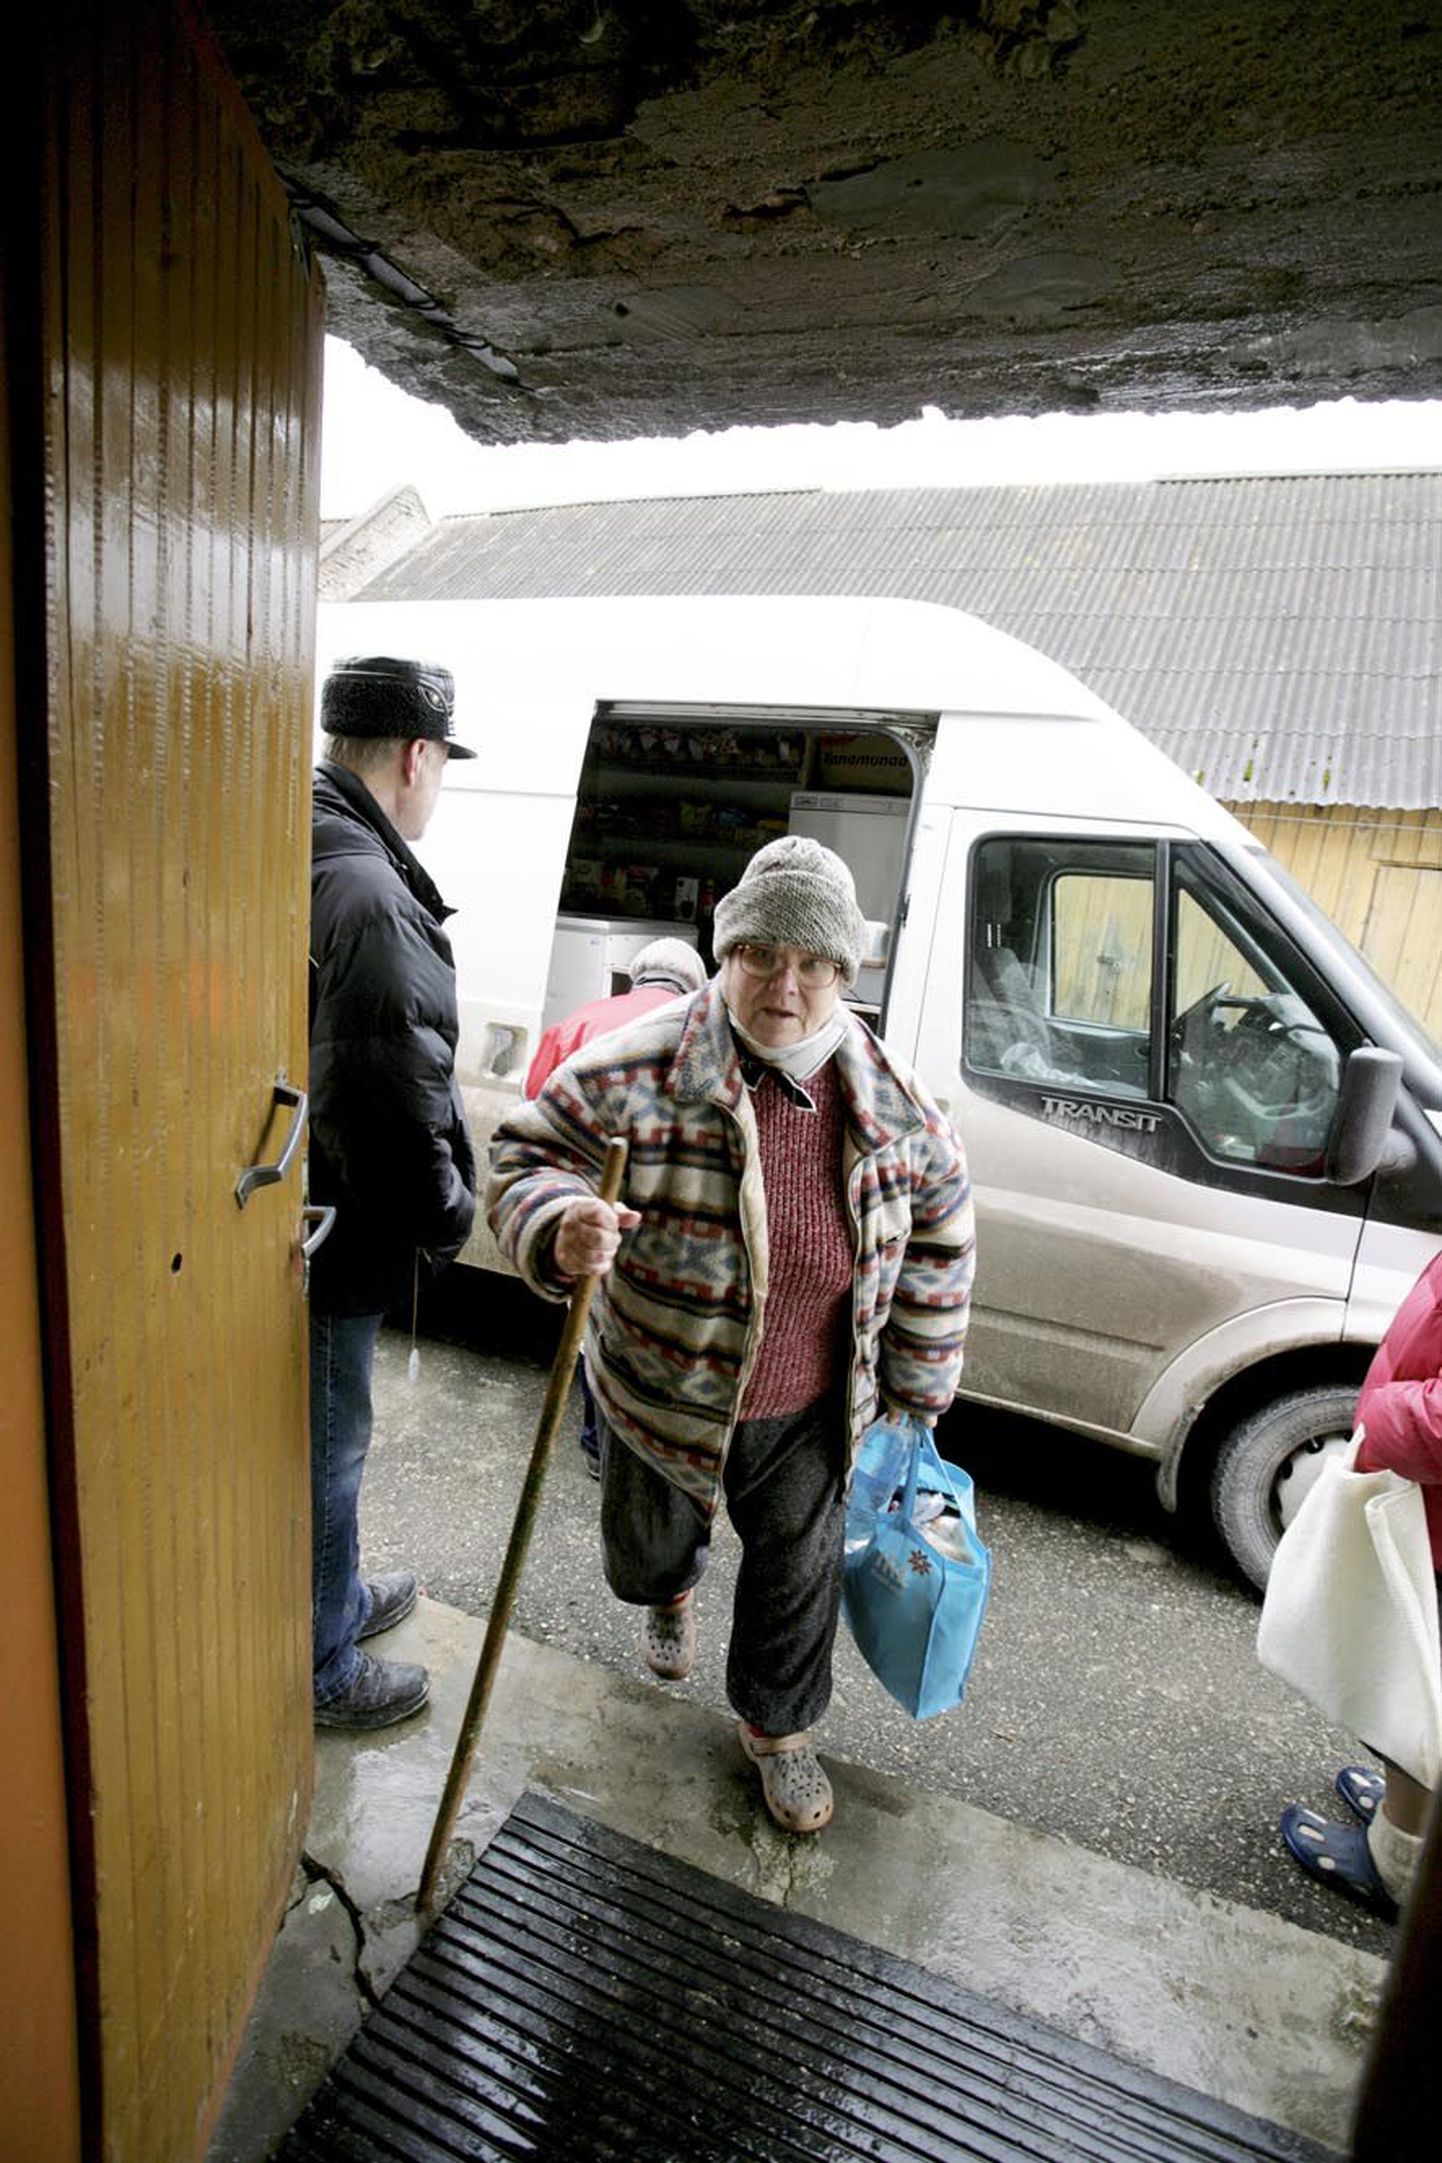 Kepi najal liikuv Liivi Pärn pole haigete jalgade tõttu aastaid poes käinud, kuid otse treppi sõitvast kauplusautost saab ta esmavajaliku toidukraami kätte.